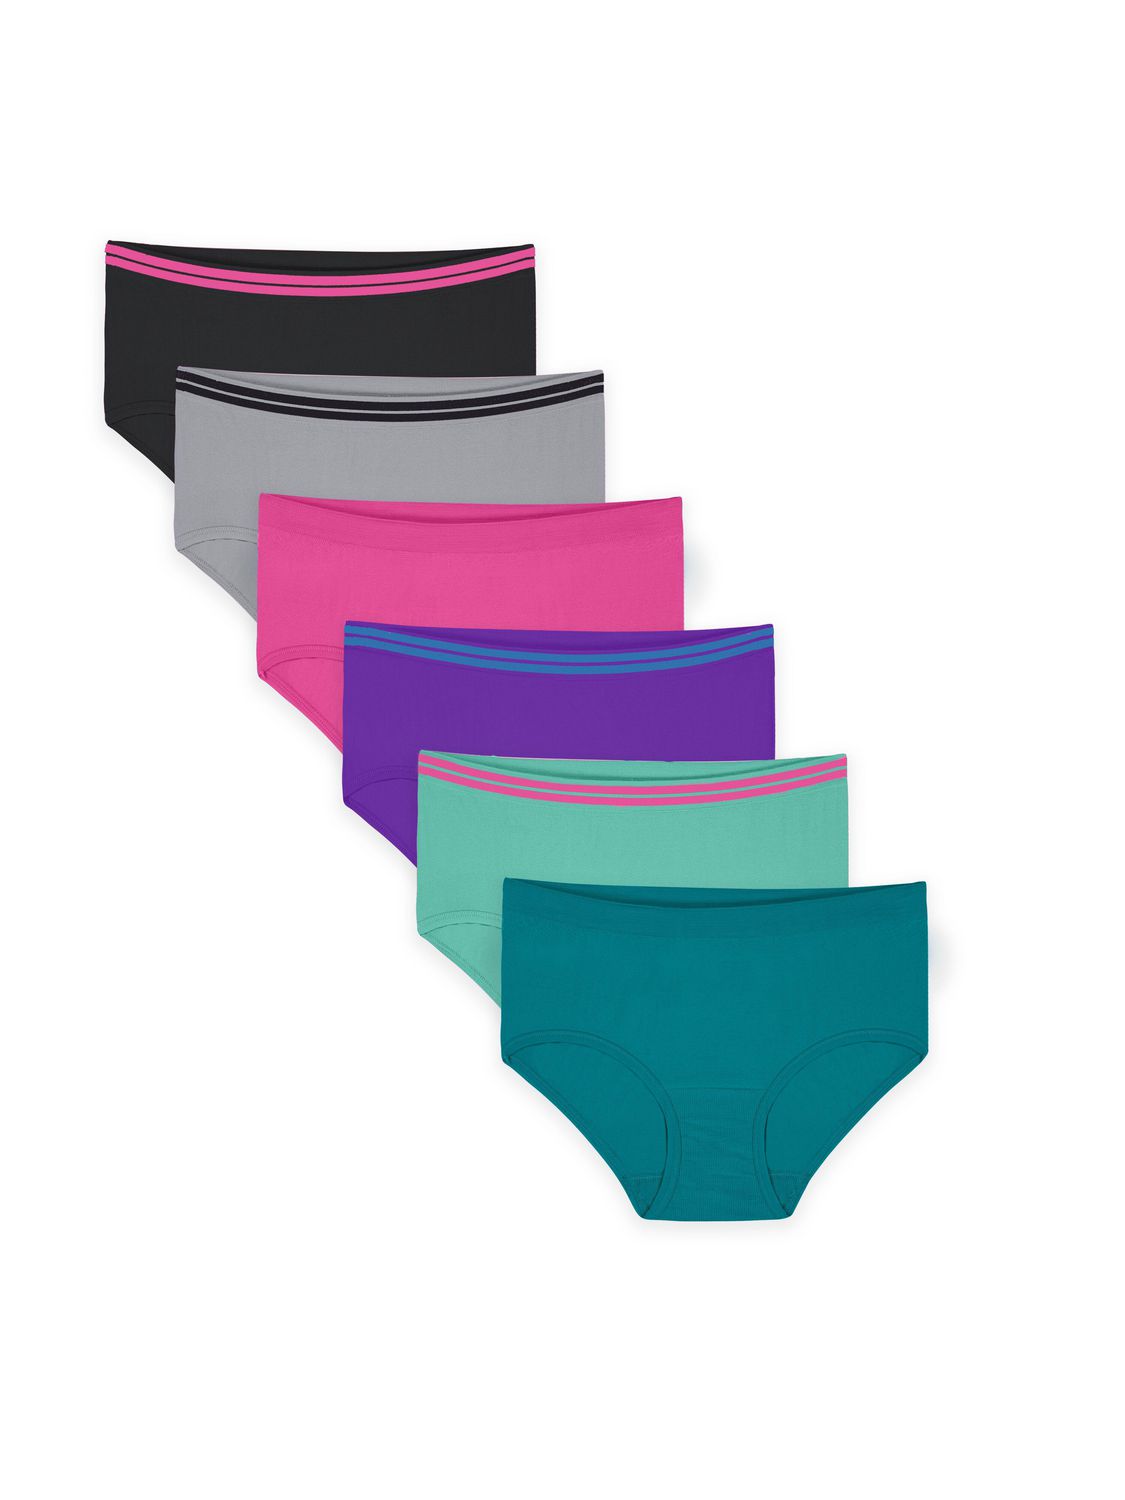 Girls' Underwear 12 Pack Briefs Cotton Hipster Panties Sizes 4-10 - Walmart .ca